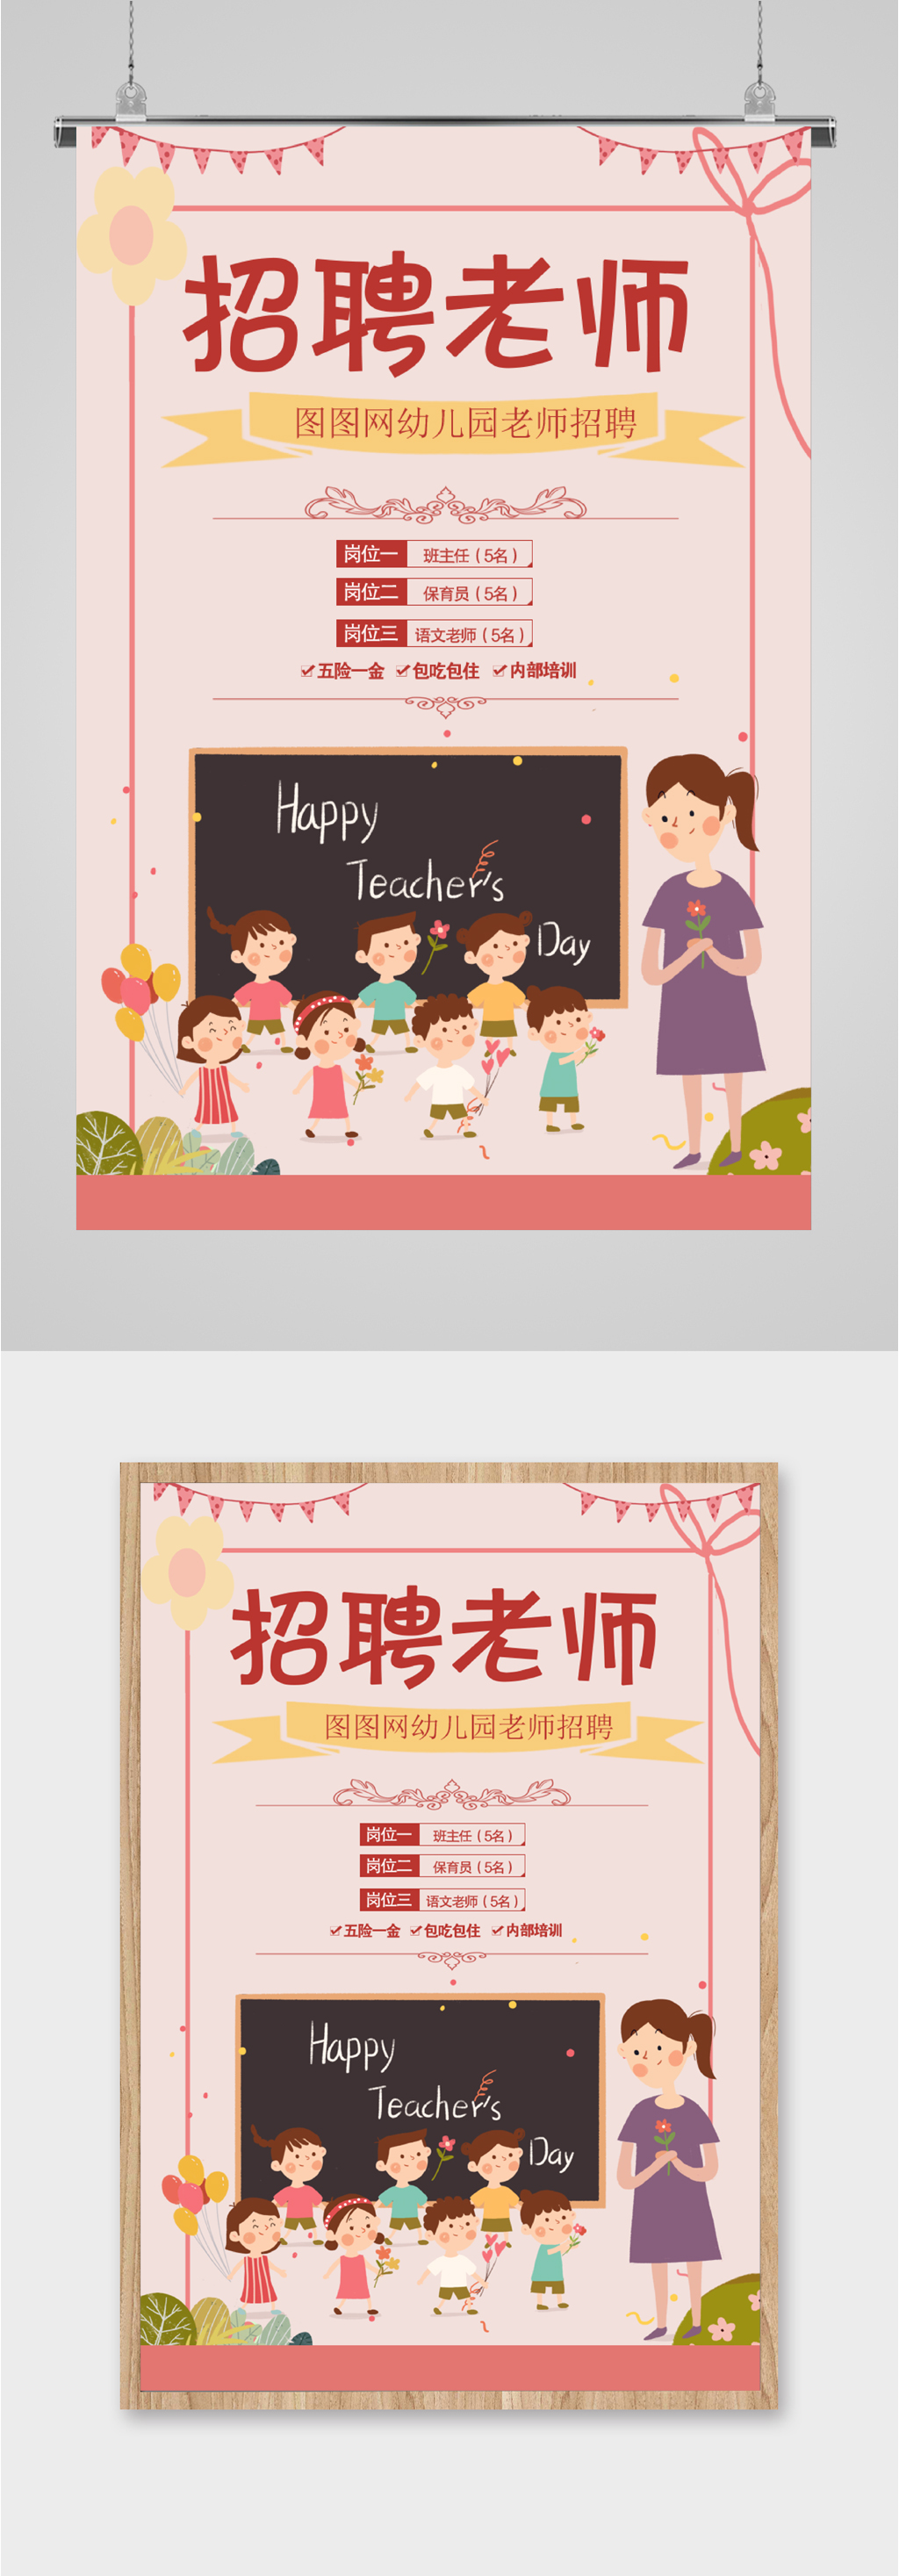 幼儿园招聘教师广告图片